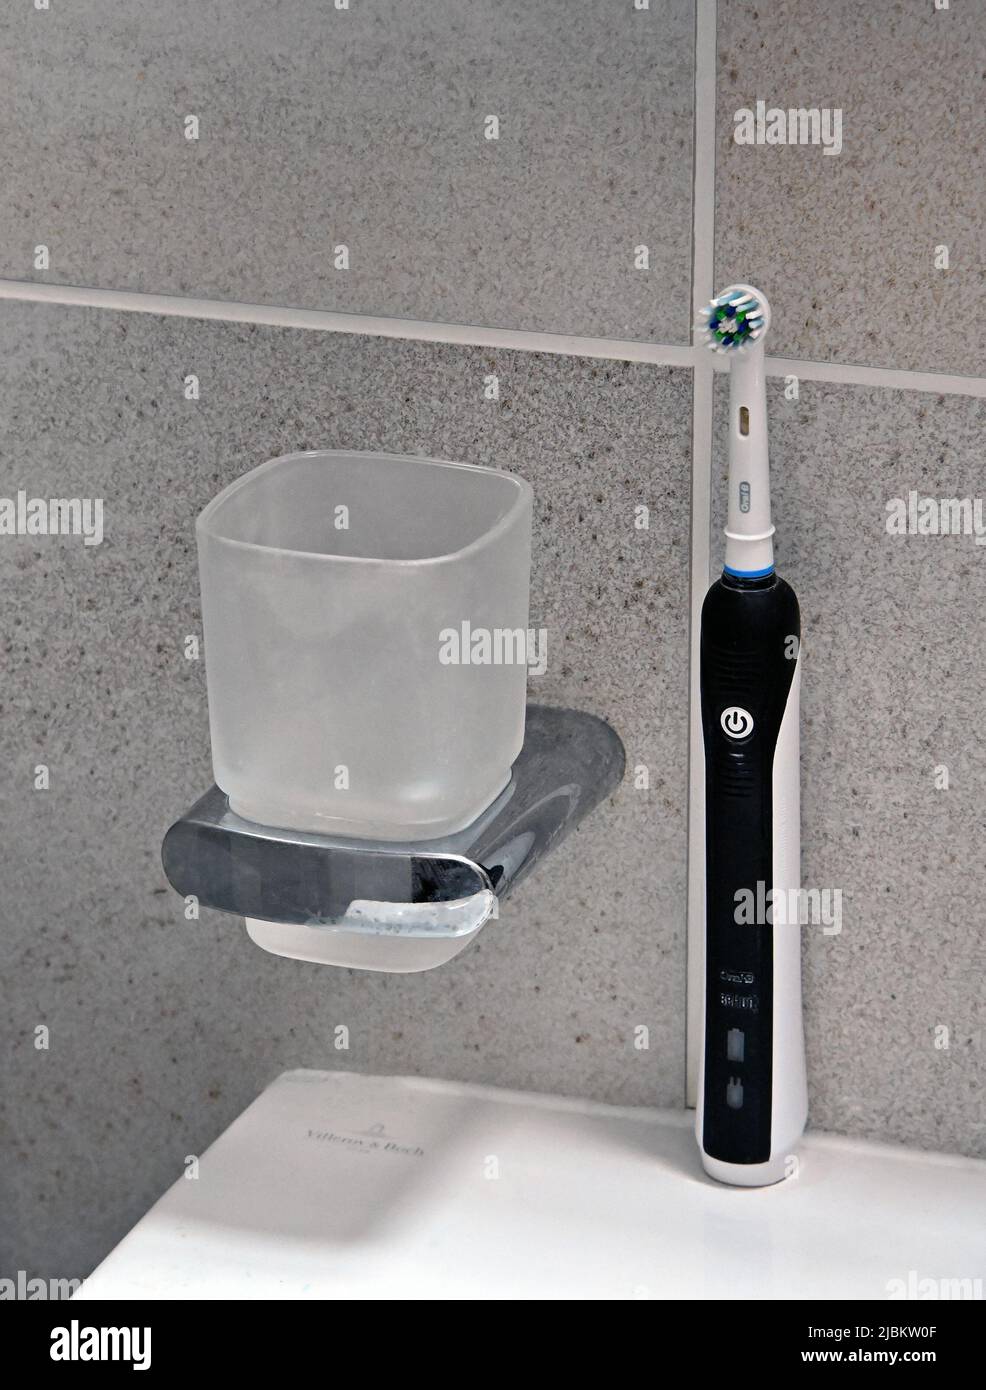 Cepillo dental eléctrico Oral B y vidrio de agua en el baño de azulejos. Foto de stock